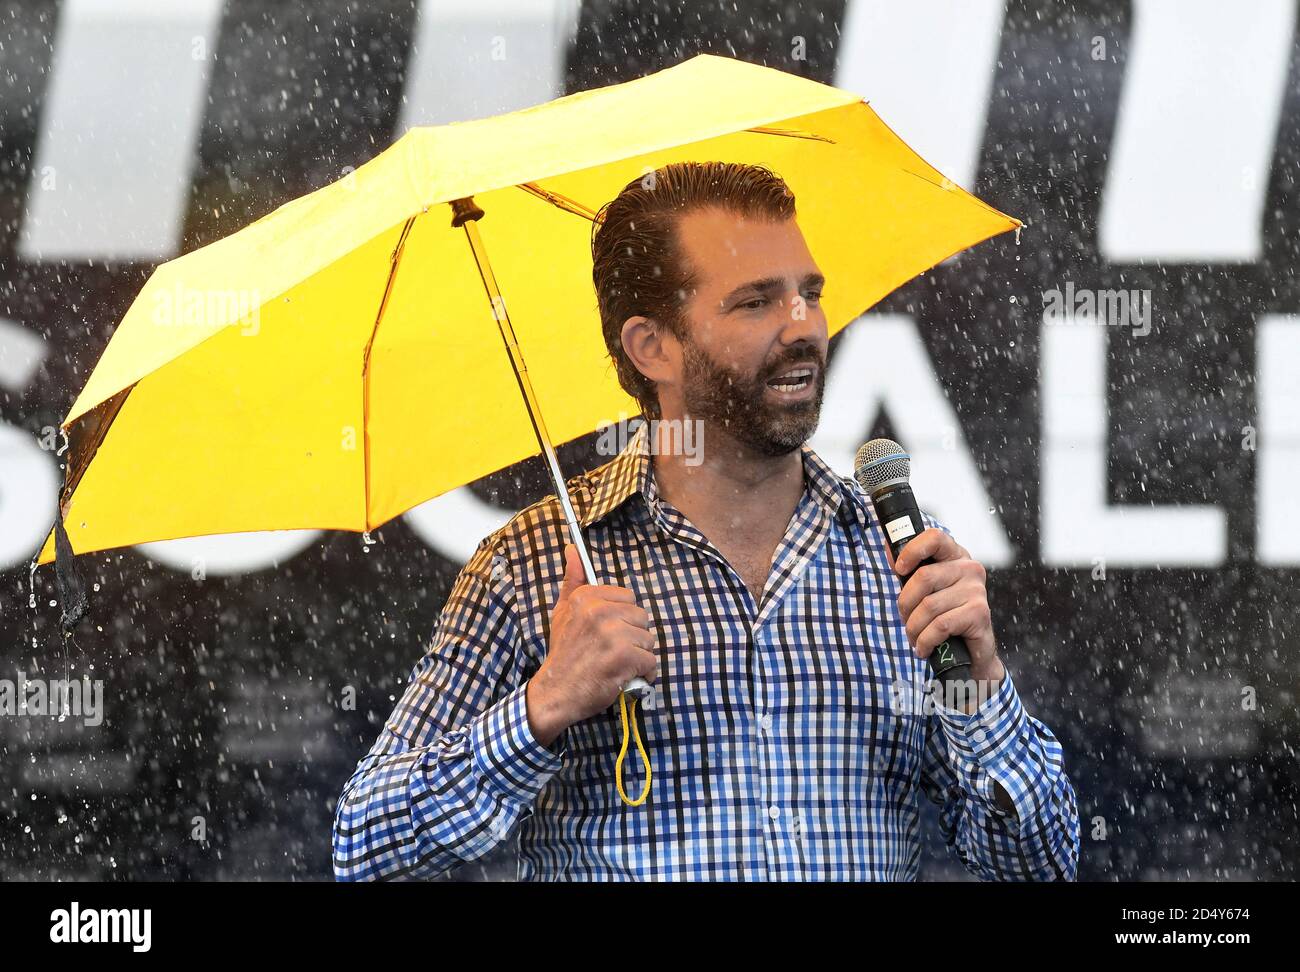 Orlando, Floride, États-Unis. Le 11 octobre 2020 - Orlando, Floride, États-Unis - Donald Trump Jr. Tient un parapluie tout en parlant lors d'une douche de pluie à un rassemblement de campagne des combattants contre le socialisme en soutien de son père, le président américain Donald Trump, le 11 octobre 2020 à Orlando, Floride. Le combattant de l'UFC Jorge Masvidal a également pris la parole lors du rallye. (Paul Hennessy/Alamy) crédit : Paul Hennessy/Alamy Live News Banque D'Images